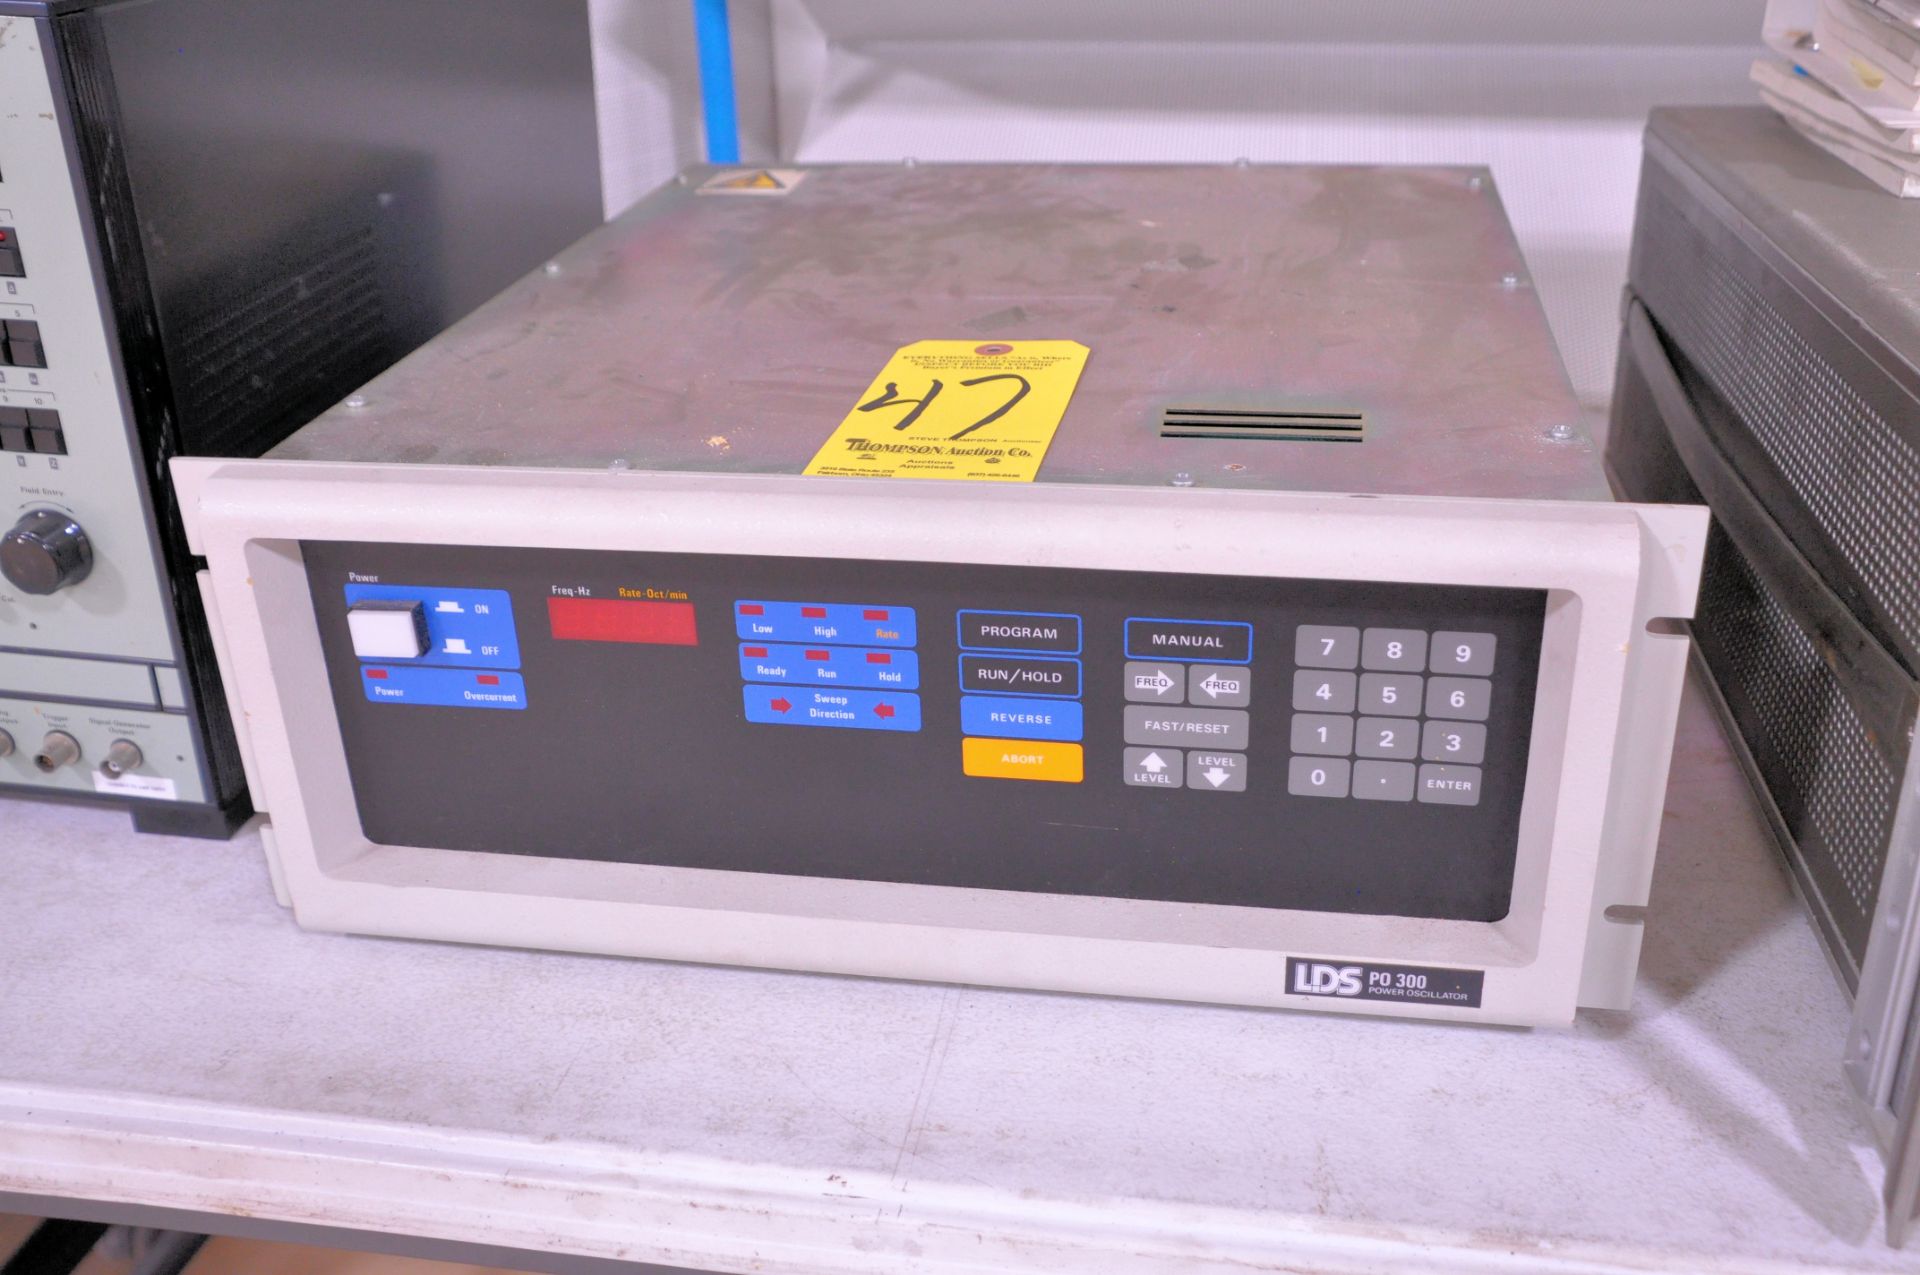 LDS Model PO-300 Power Oscillator, S/n 220